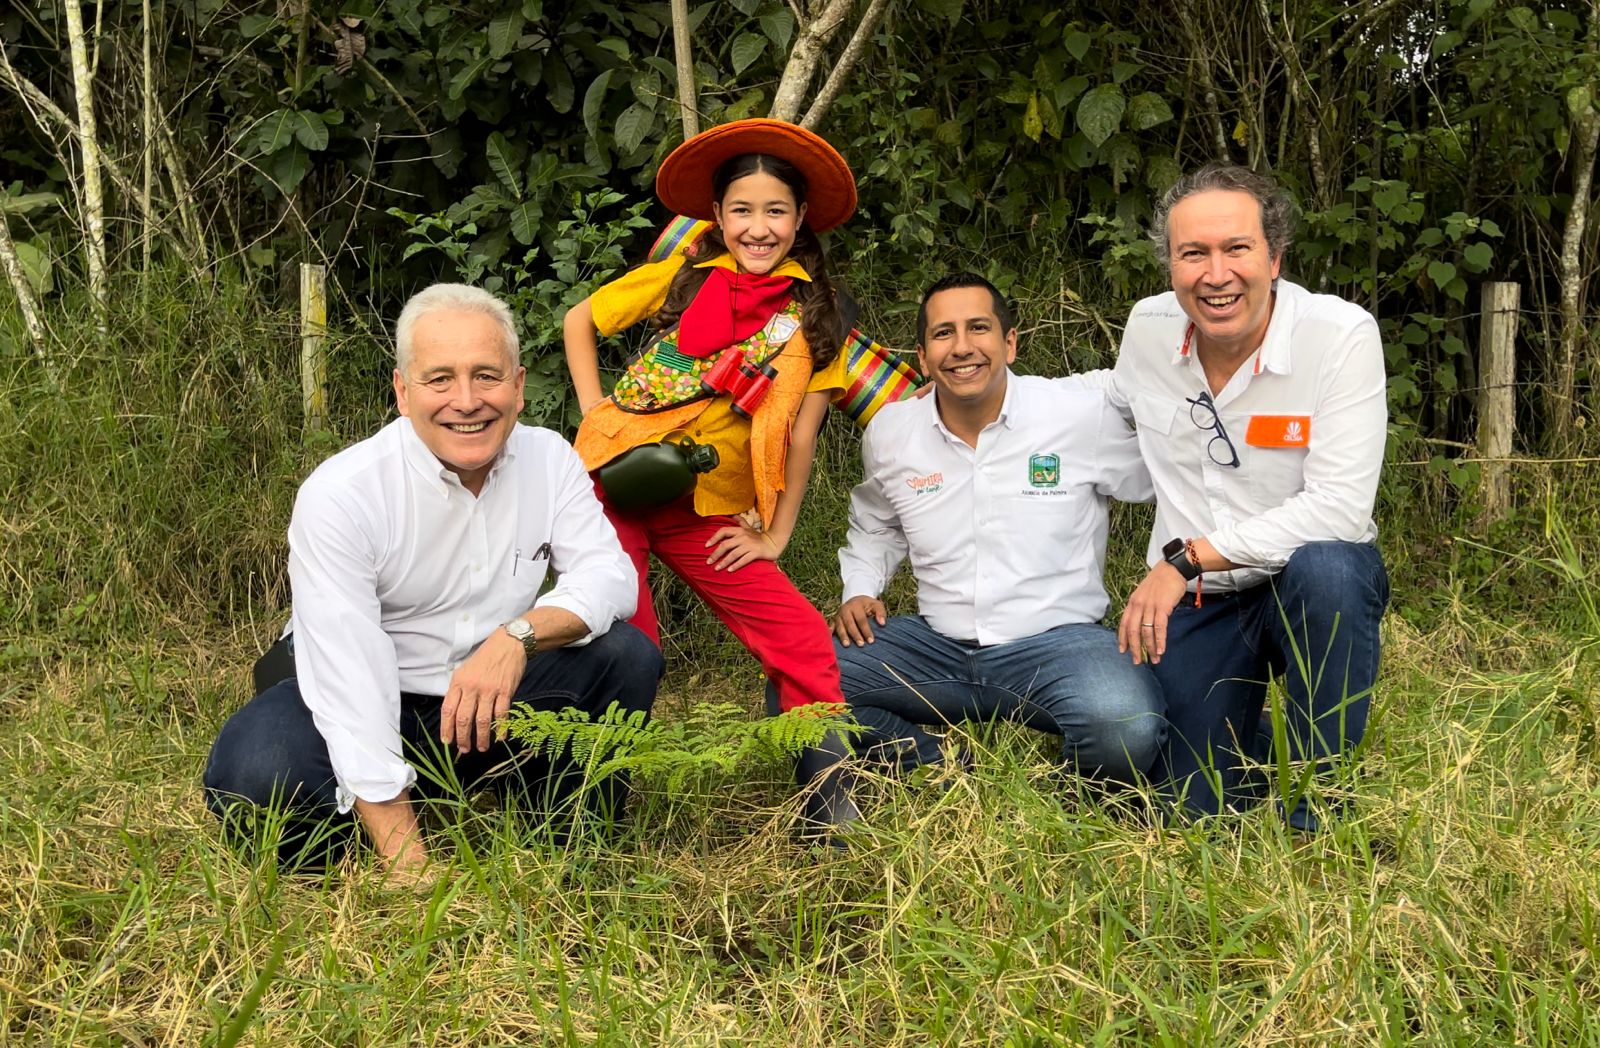 Con la siembra de 1 millón de árboles nativos en Colombia Grupo Éxito y Celsia se unen para proteger la biodiversidad del país